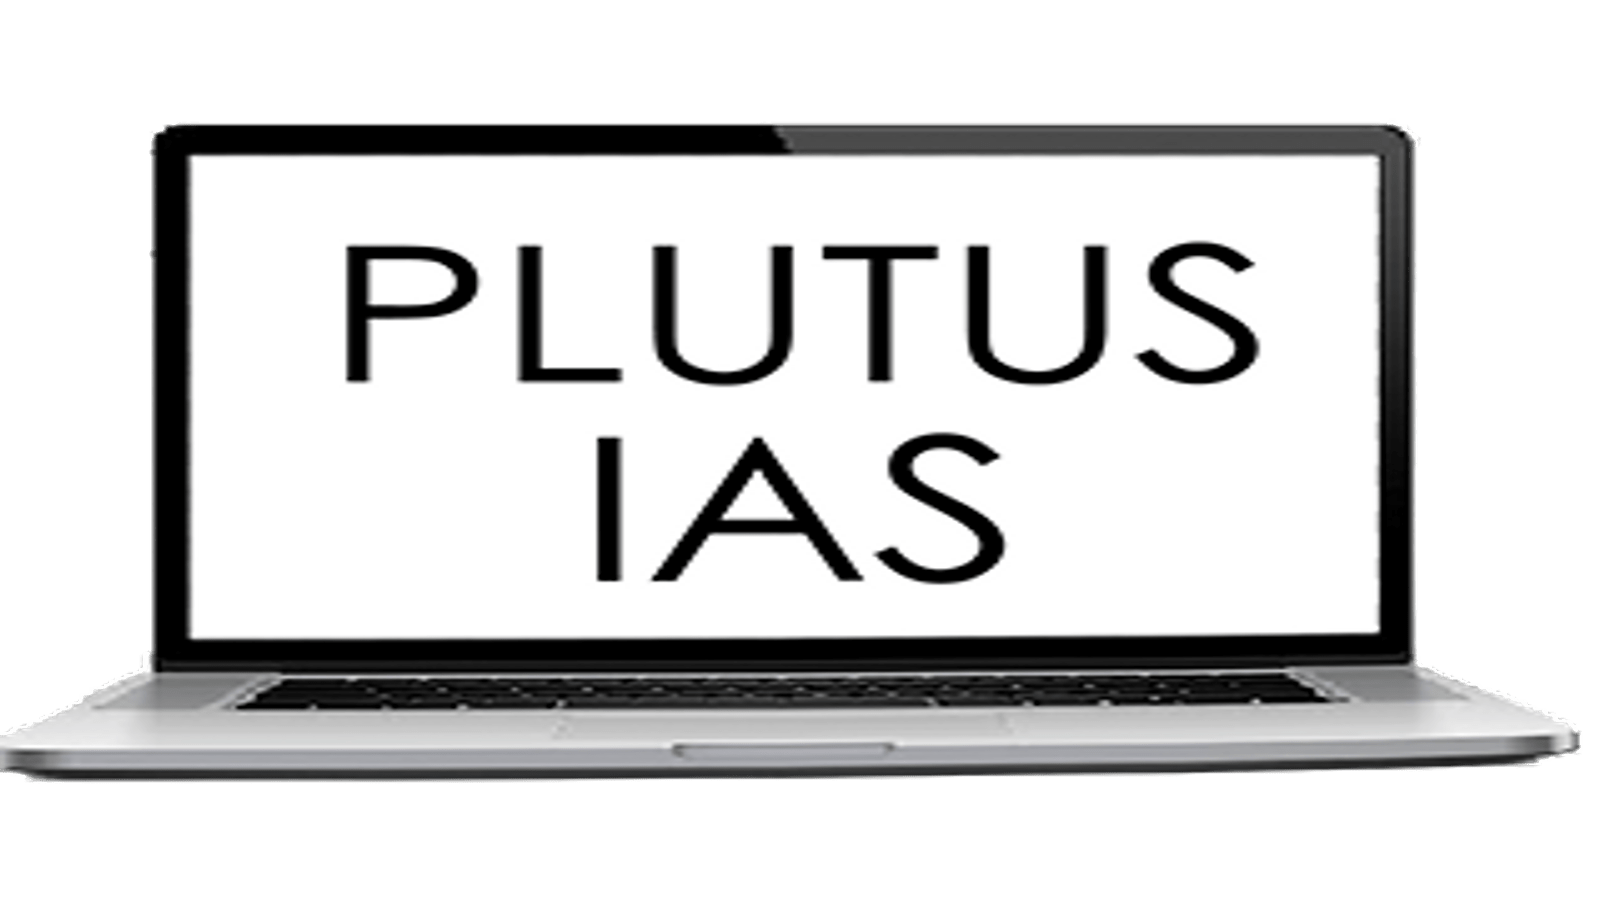 Plutus IAS Online Coaching Chennai 